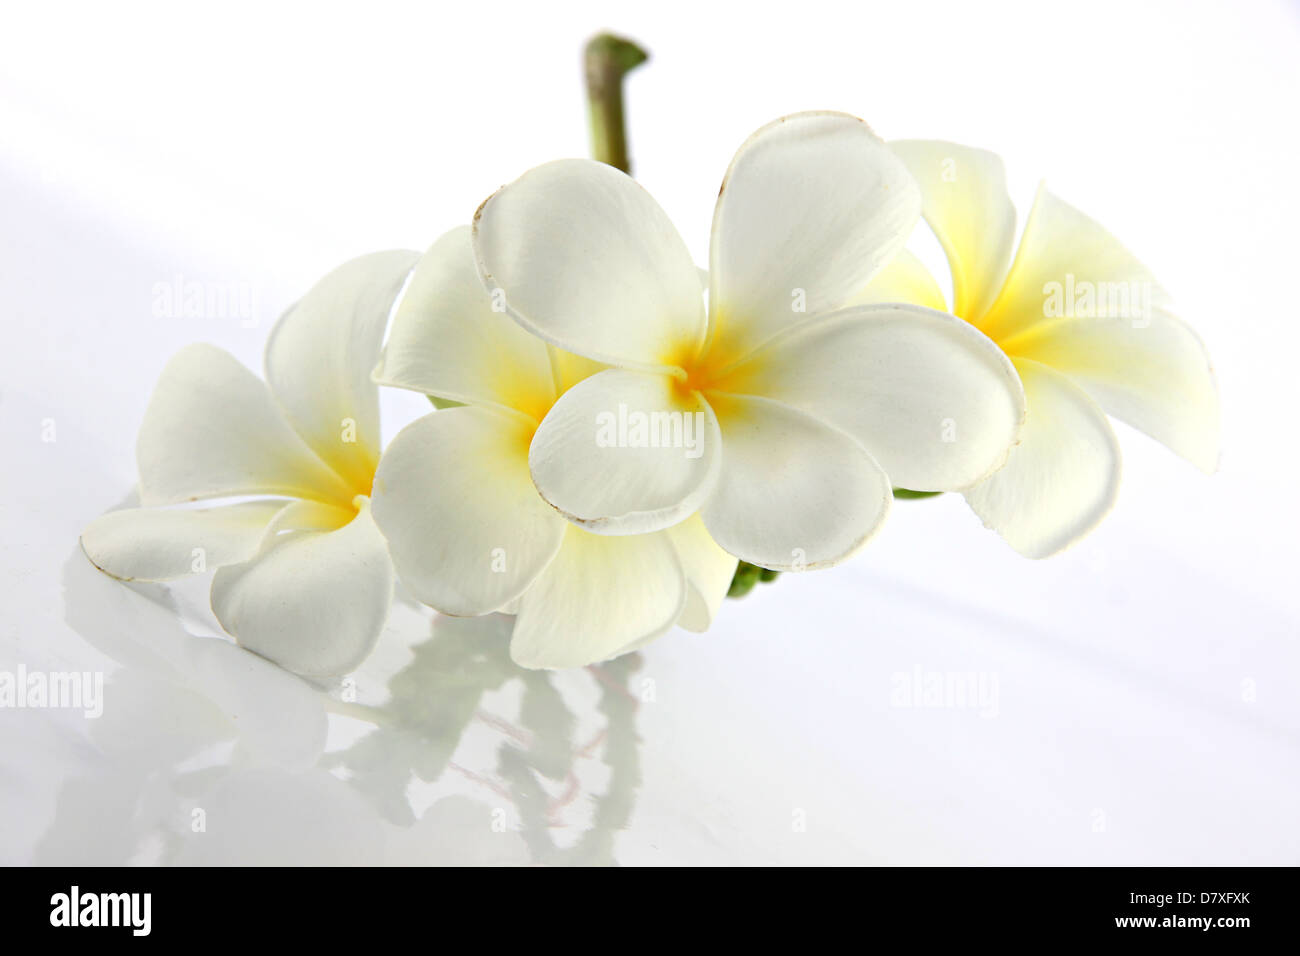 Many white frangipani flowers on the white background. Stock Photo